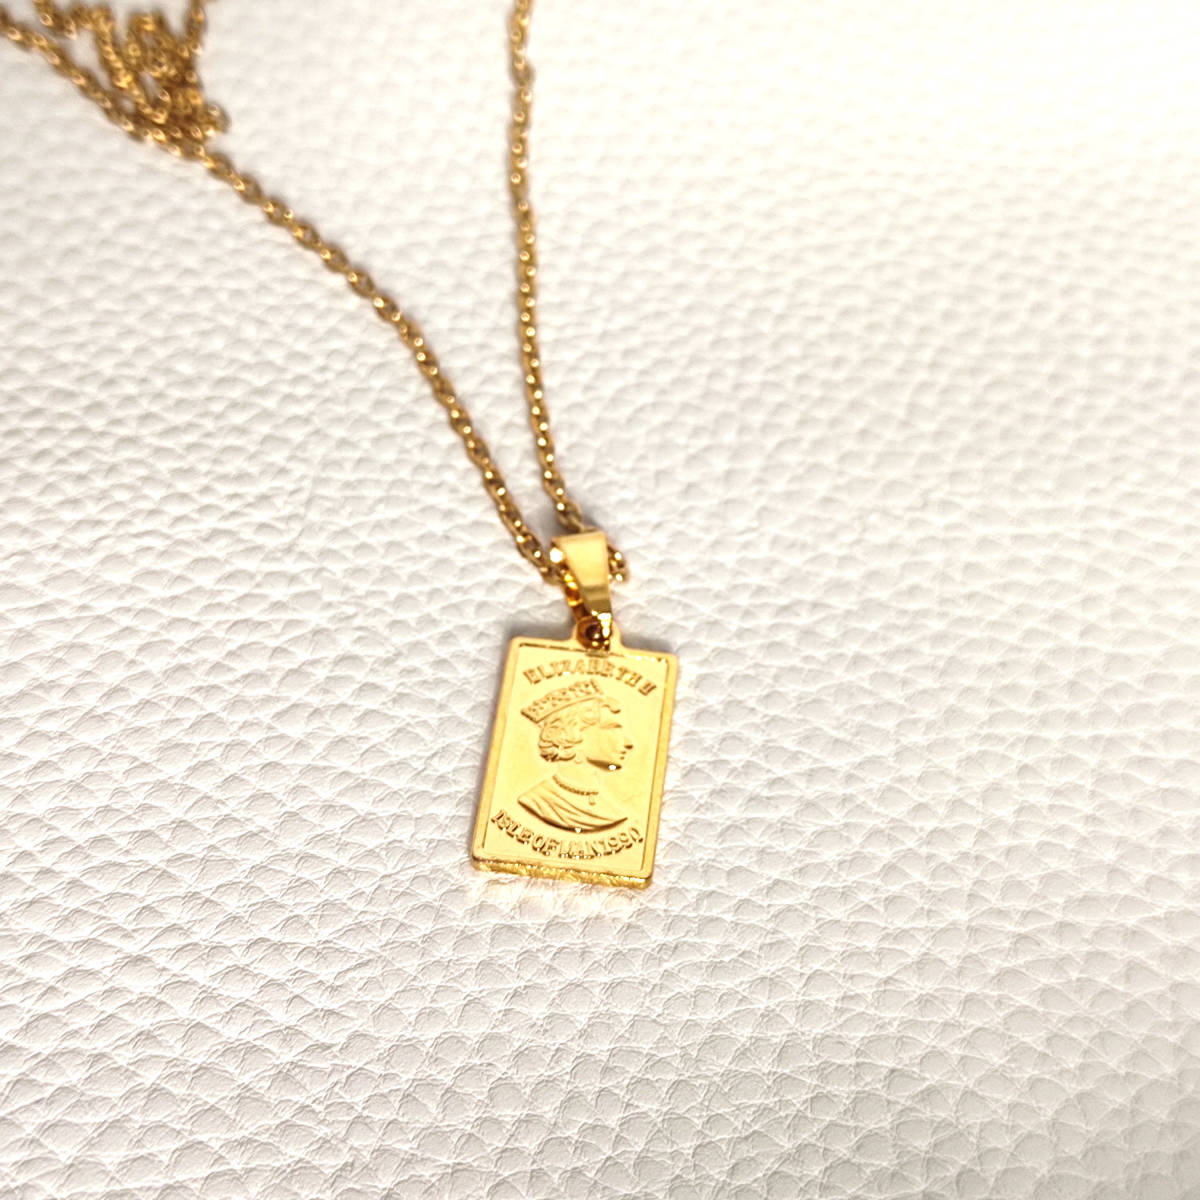 ゴールドネックレス 18kgp 鍍金 necklace Gold メンズ レディース 金 チェーン インゴット ネックレス ゴールド エリザベスコイン 141の画像1